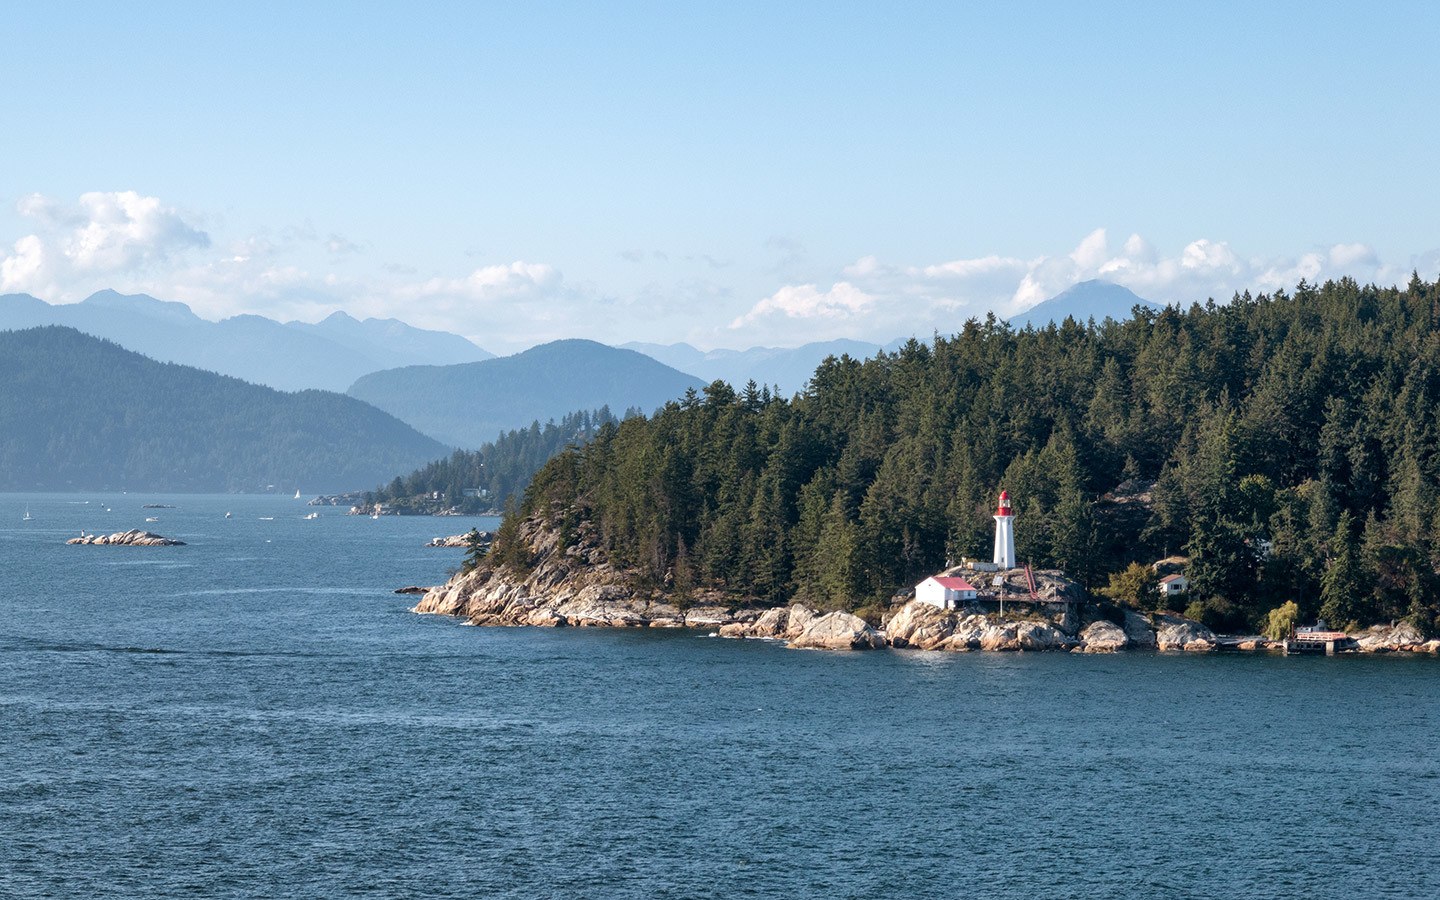 Sailing along the coastline outside Vancouver